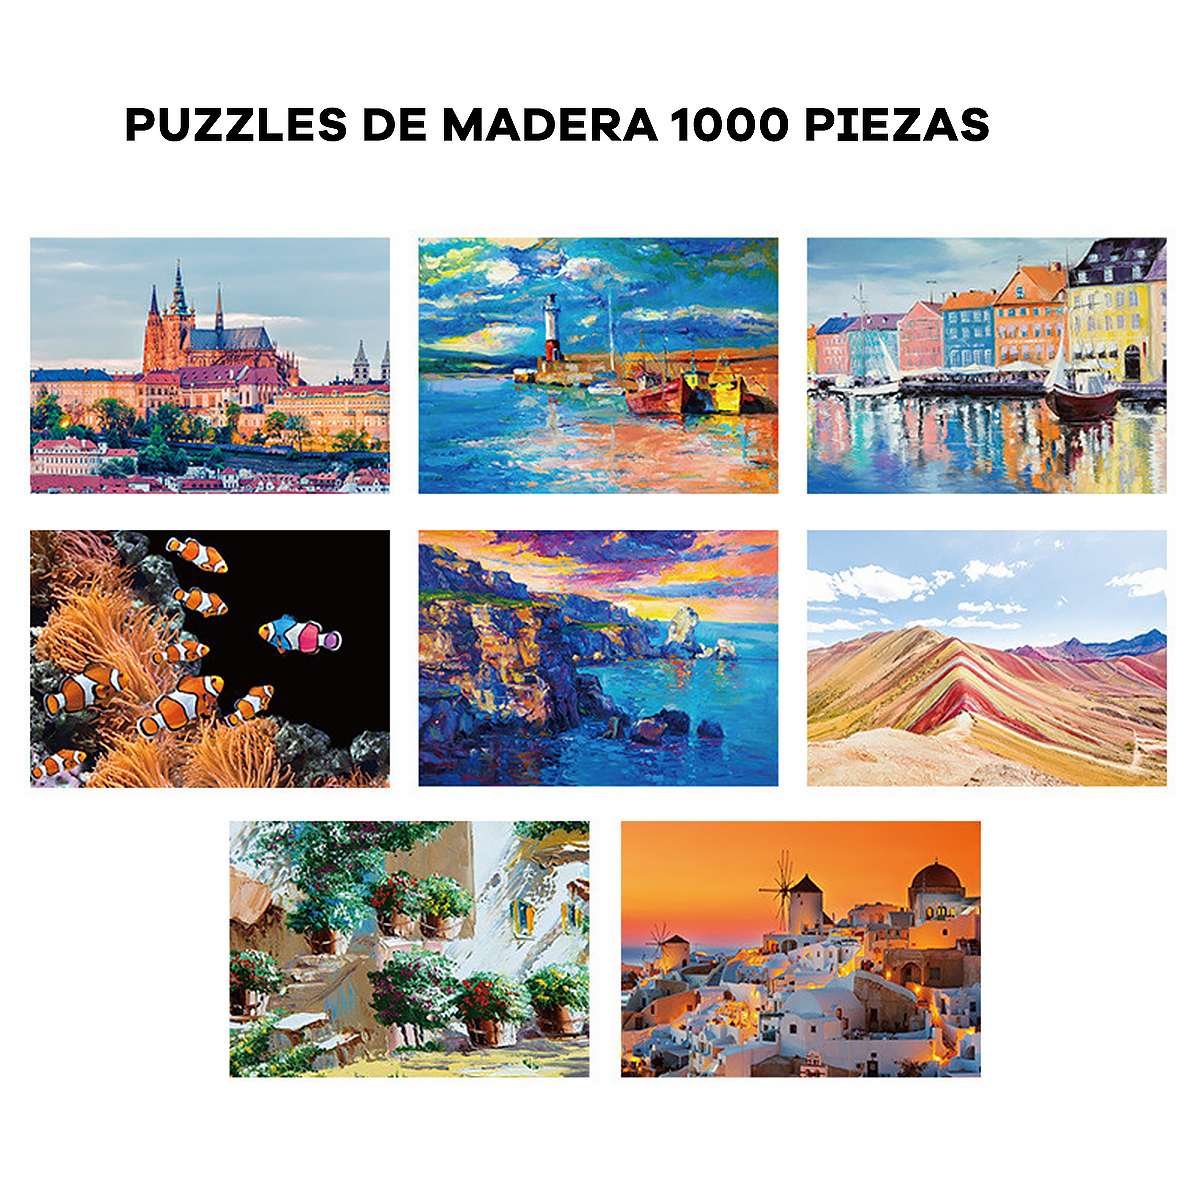 Puzzle de Madera Castillo de Praga 1000 piezas